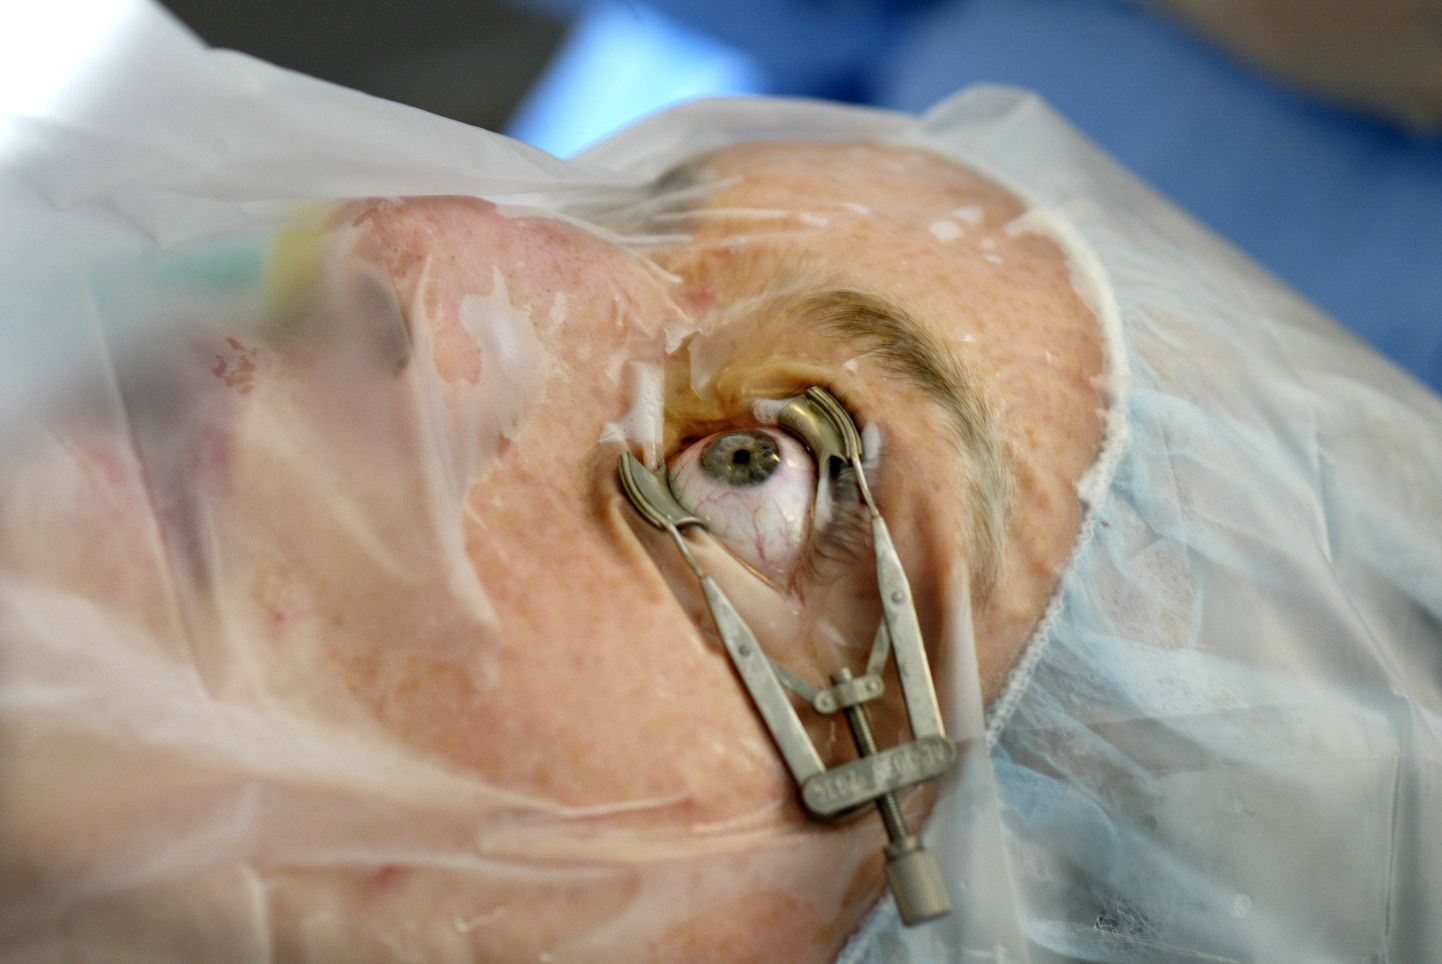 Arstid eemaldasid laseri abil ussi silmast